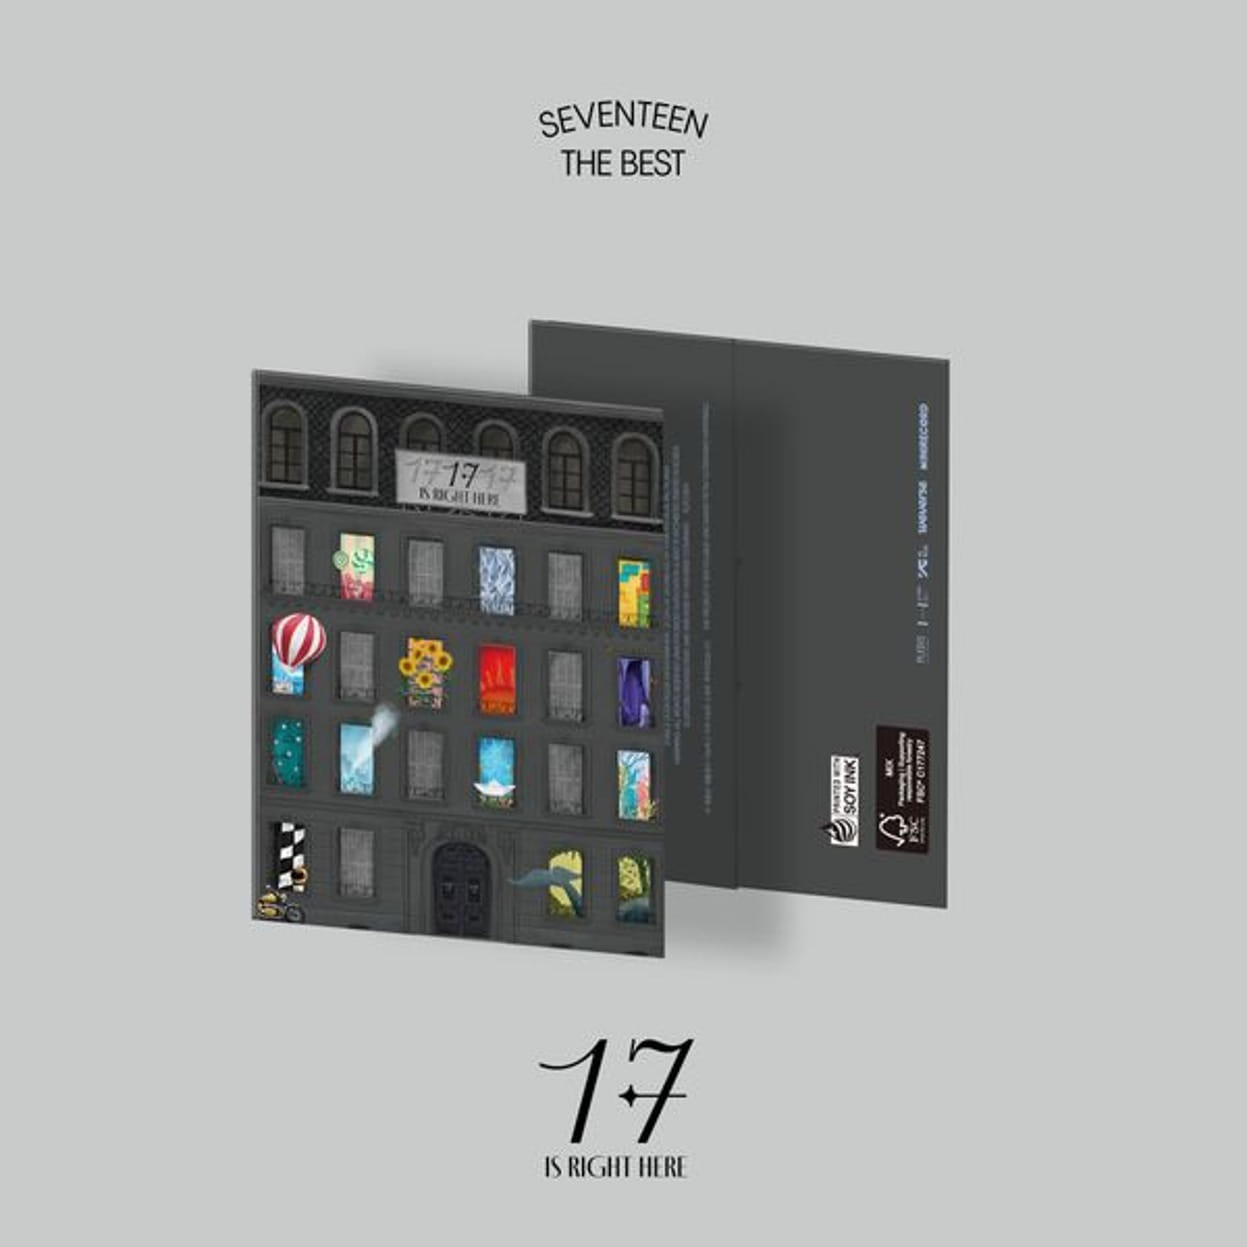 세븐틴 (SEVENTEEN) - 베스트 앨범 [17 IS RIGHT HERE] (Weverse Albums ver.)